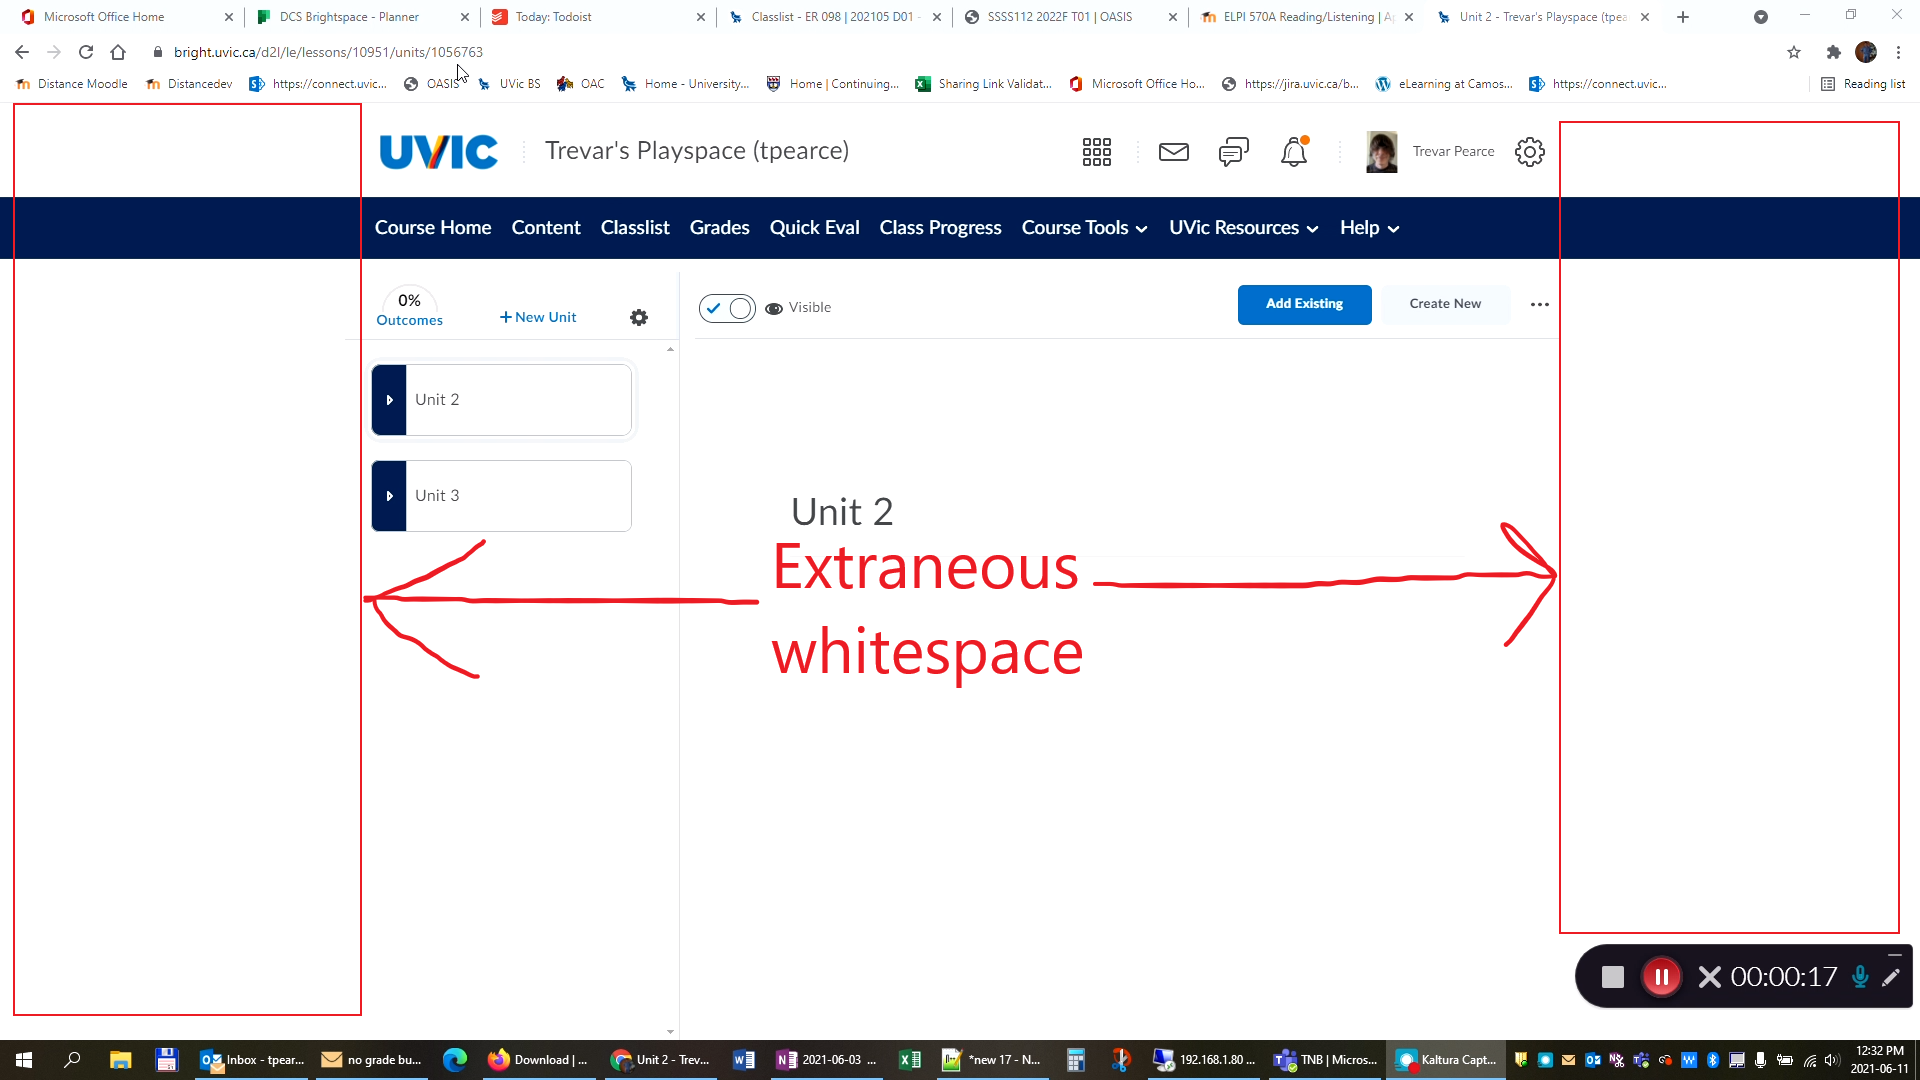 Extraneous whitespace